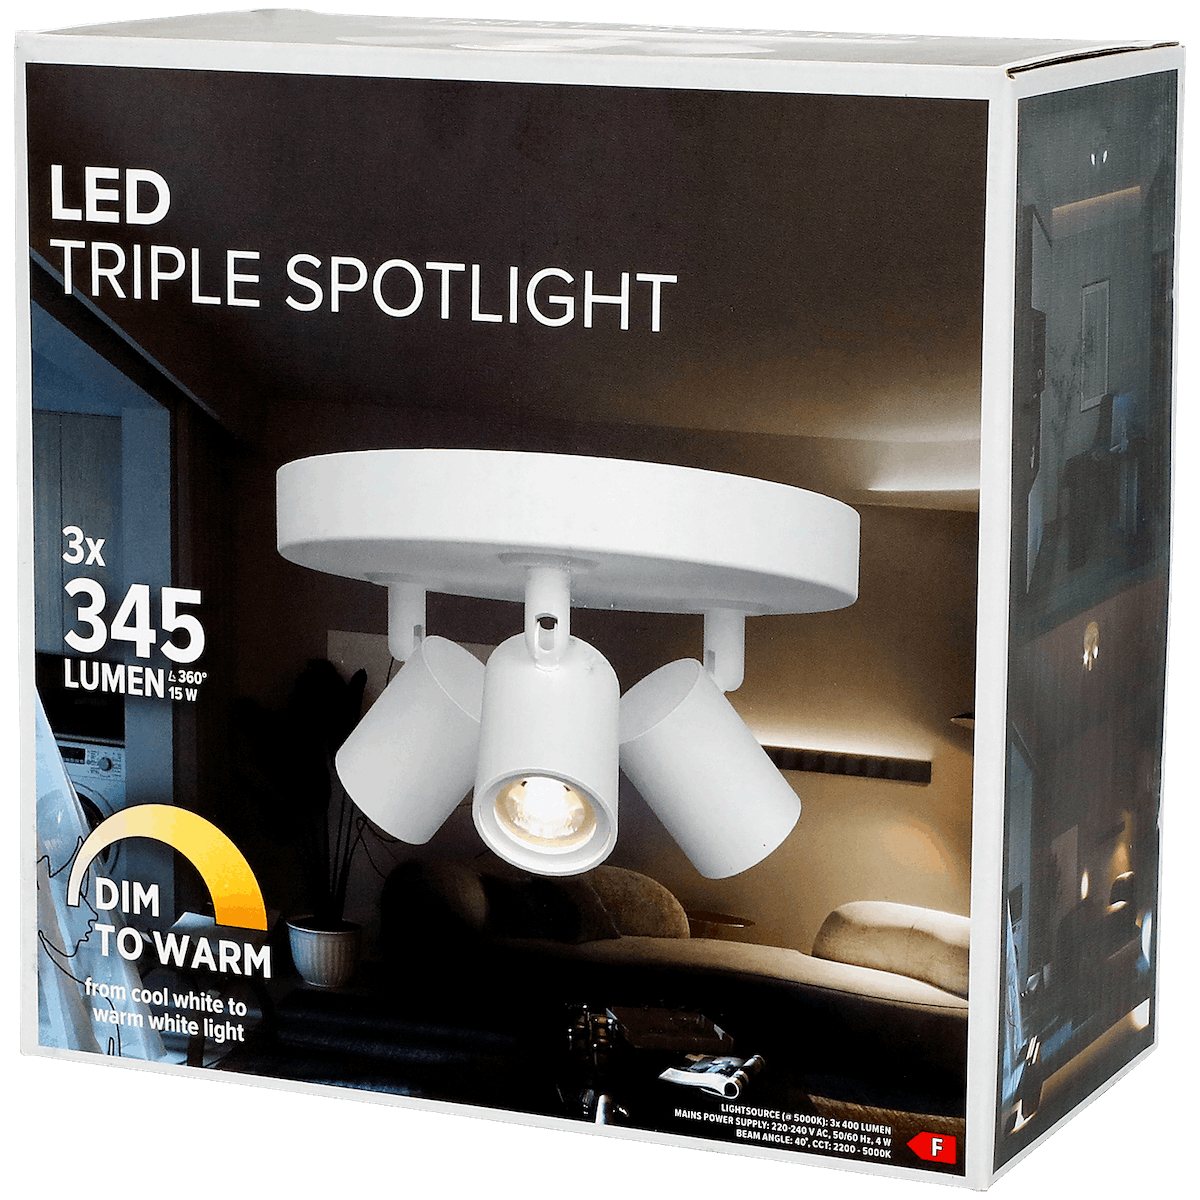 Led triple spotlight 3*345lm - DeinMarkt.at 